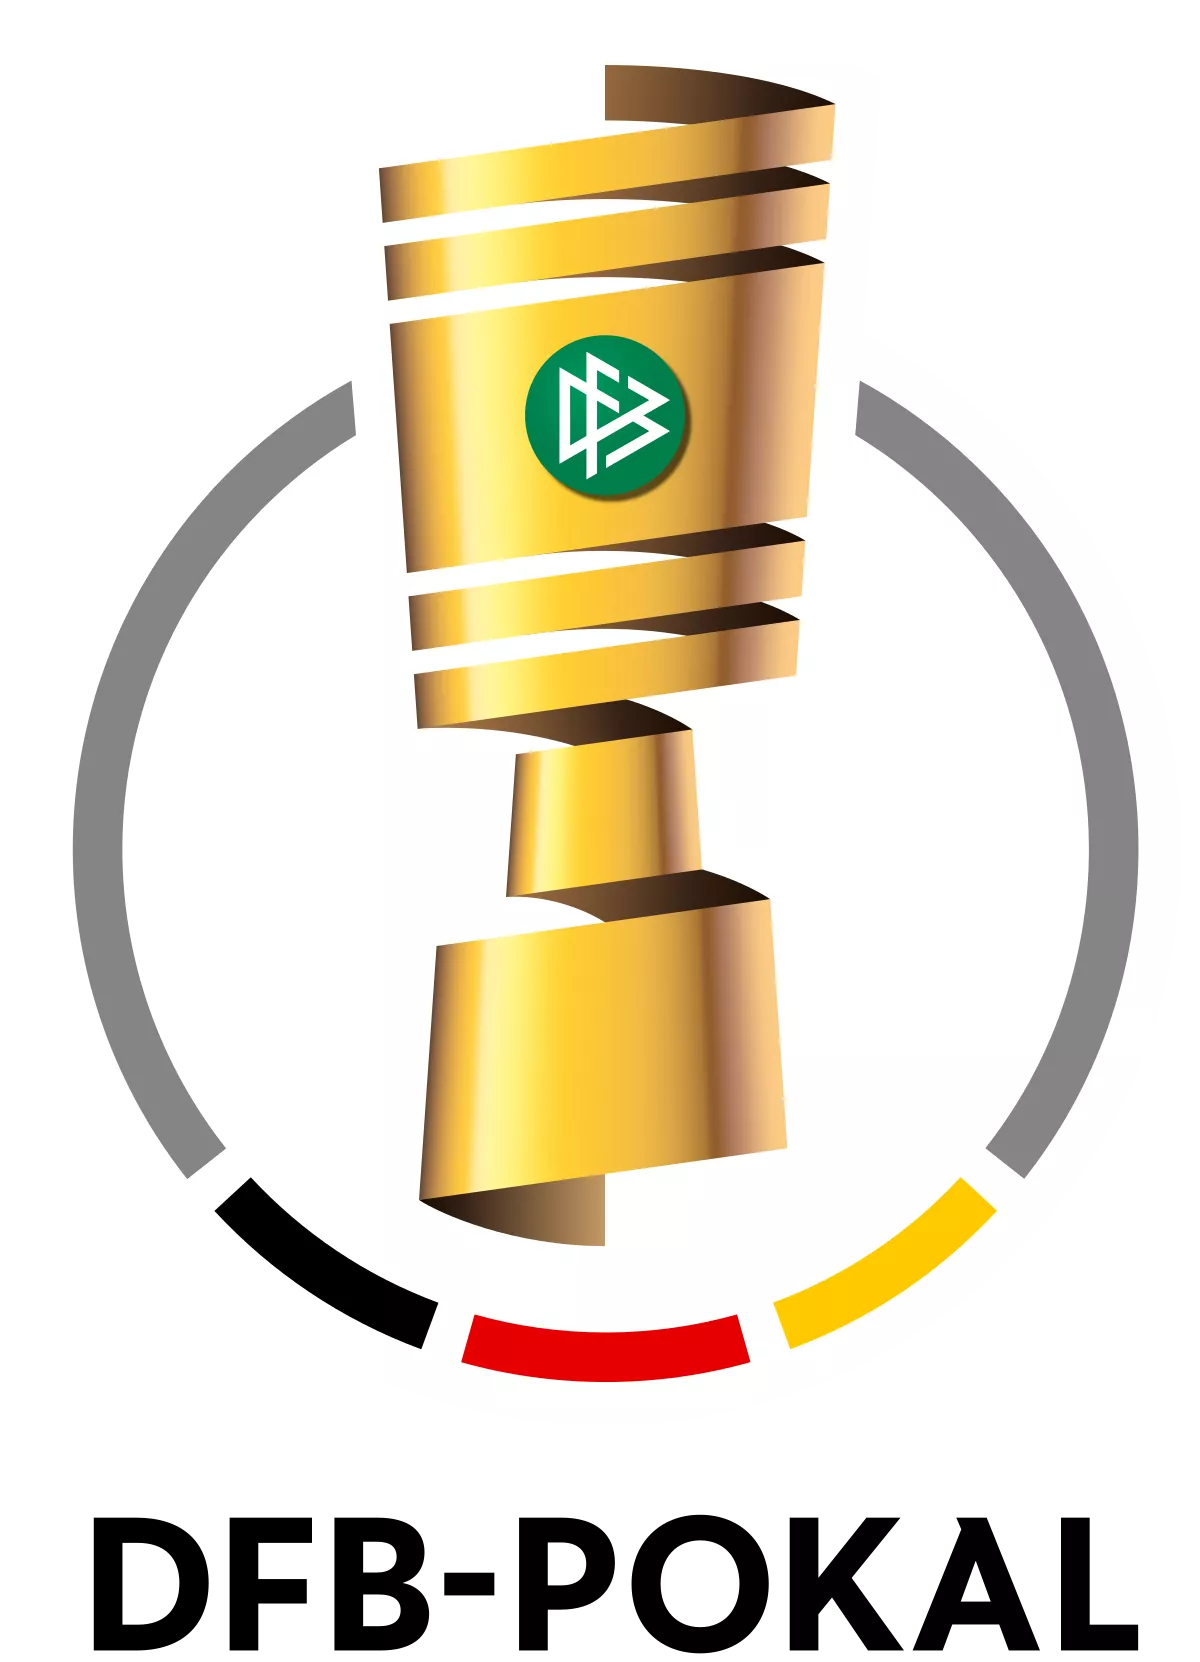 Finał Pucharu Niemiec: Bayer vs BayernKursy bukmacherskie w STS: 1 - 9,56 | X - 5,25 | 2 - 1,35Postaw ten mecz za freebet 25 zł